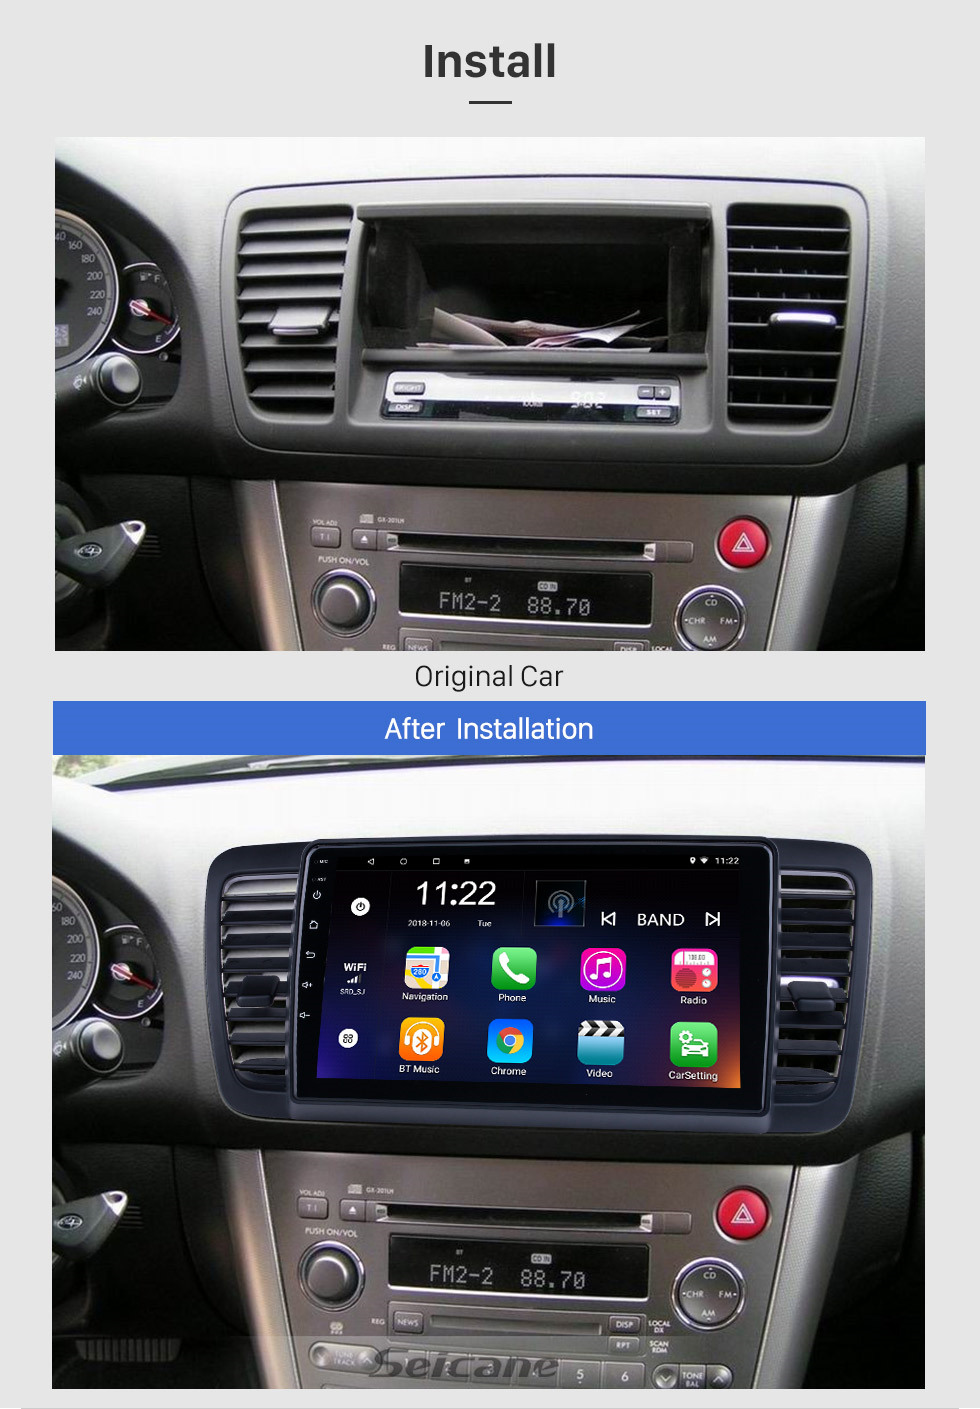 Seicane Pantalla táctil HD 9 pulgadas Android 13.0 para 2004 2005 2006-2009 Subaru Legacy / Liberty Radio Sistema de navegación GPS con soporte Bluetooth Carplay DVR